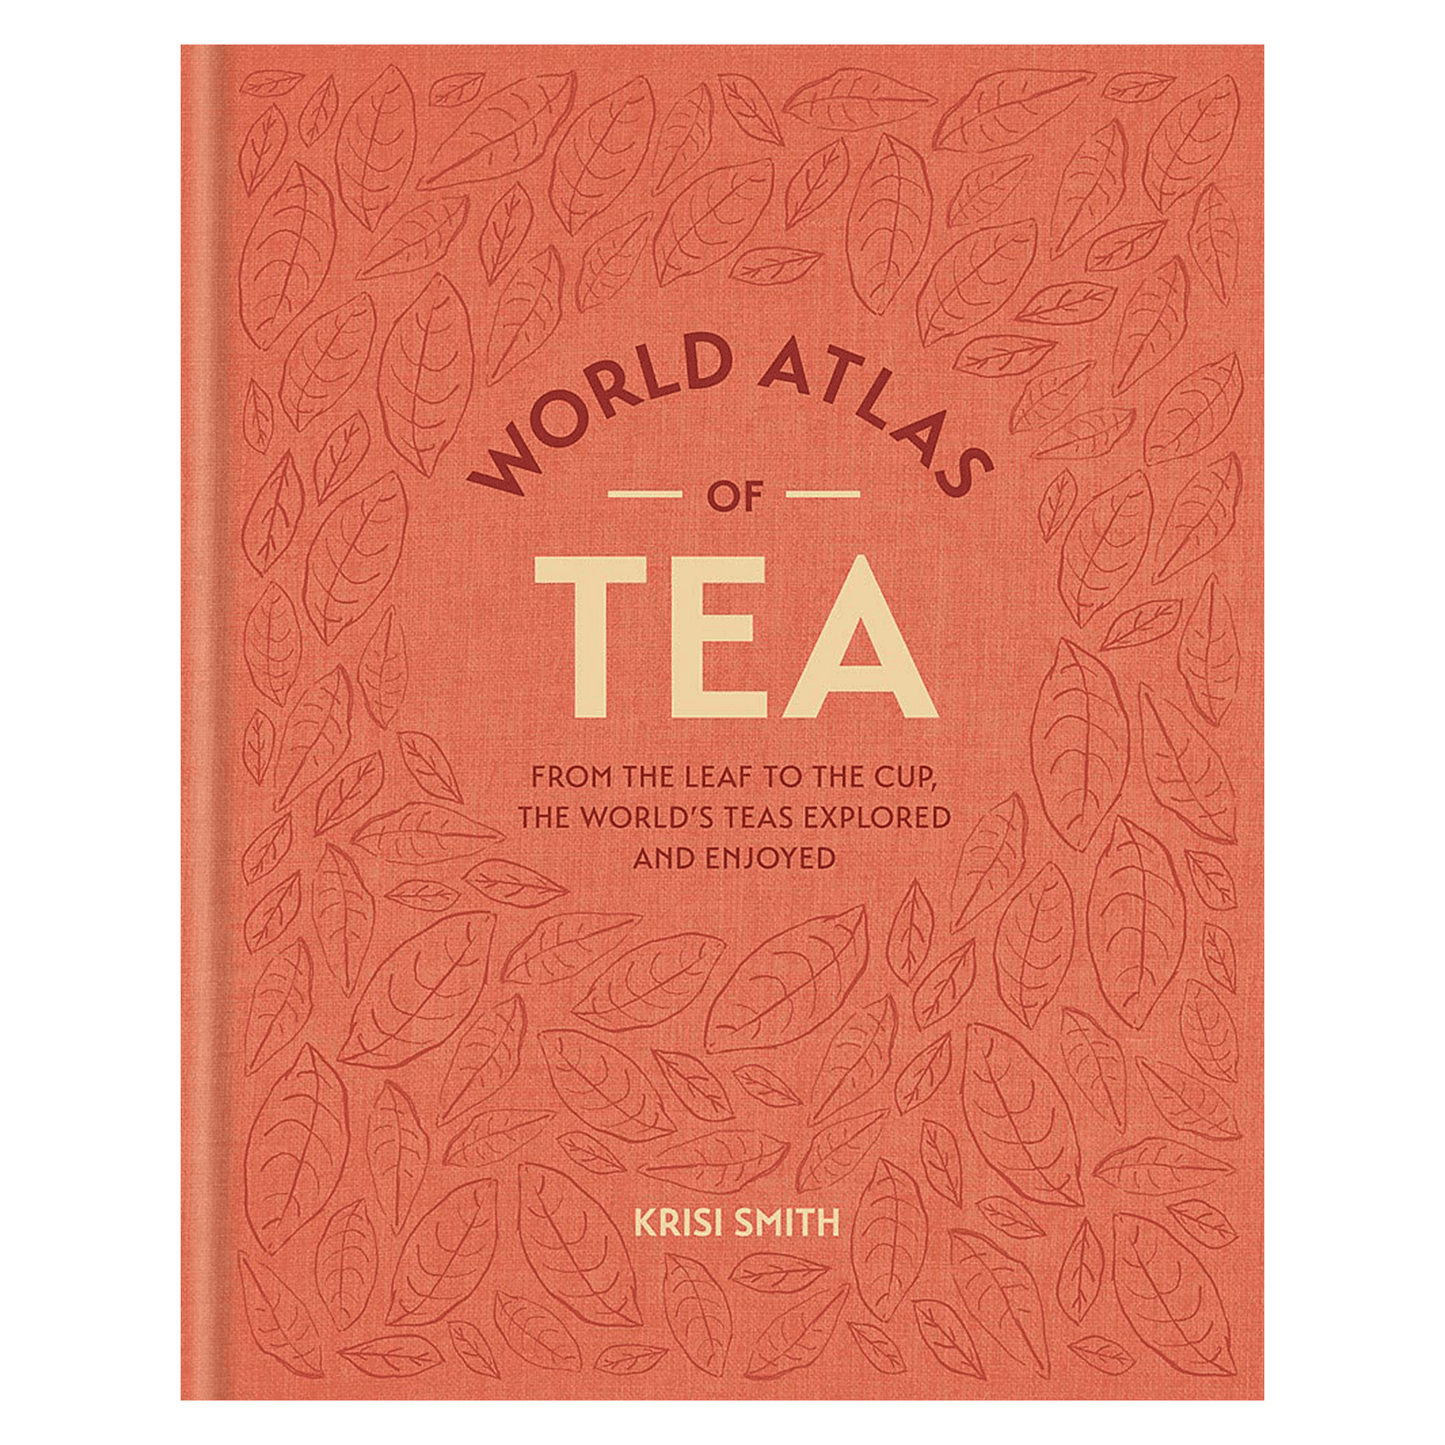 Knyga „World Atlas of Tea"